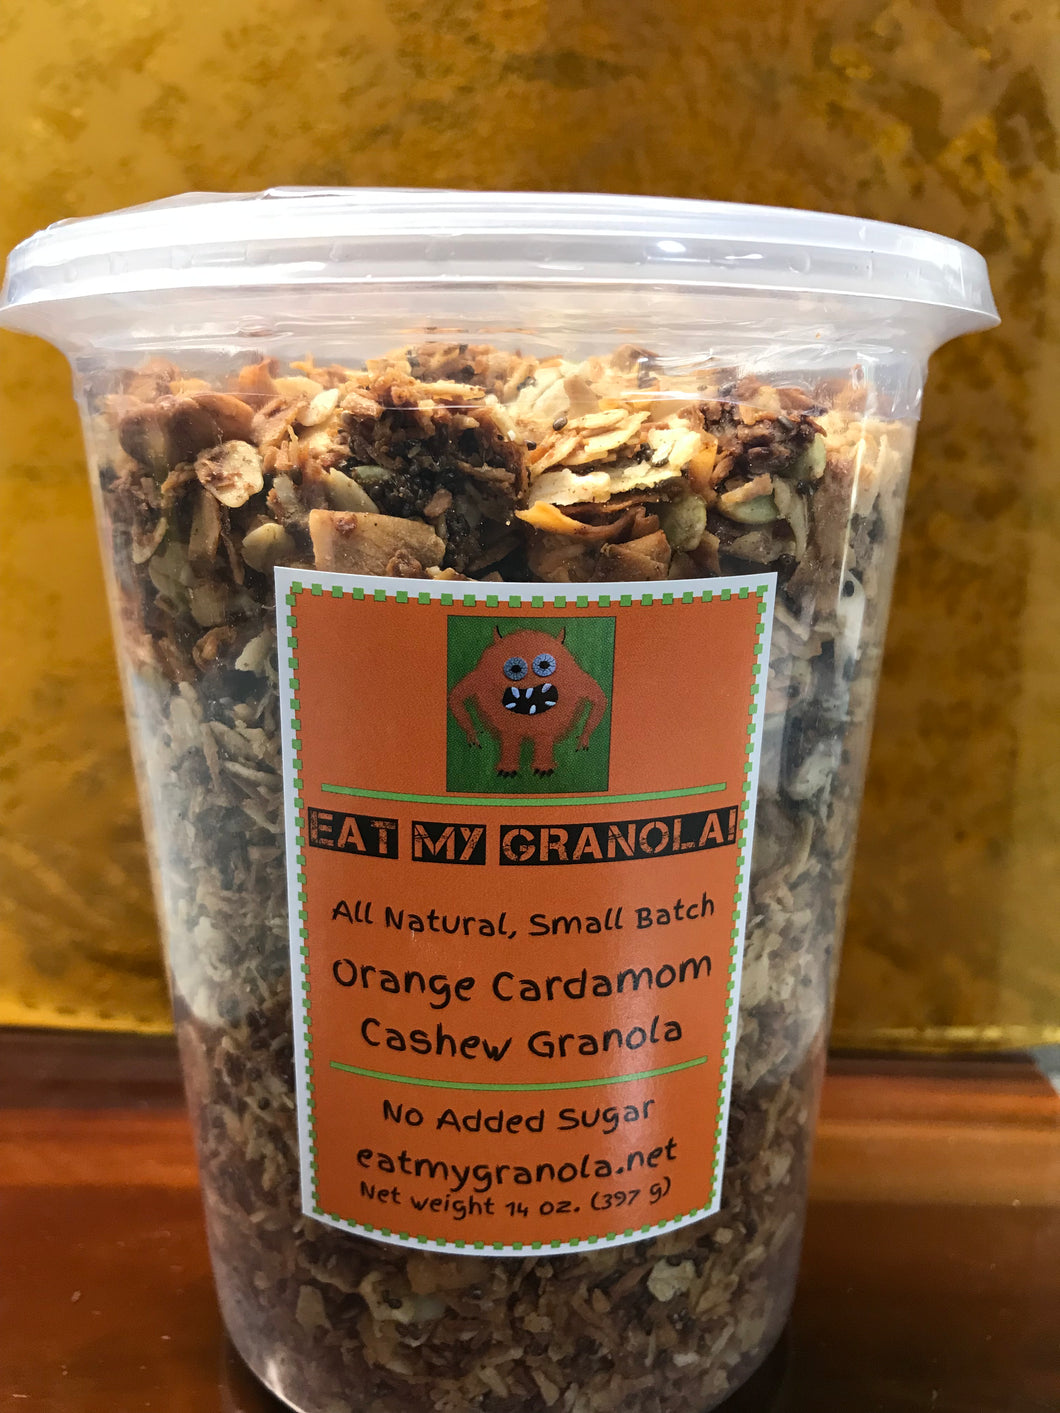 Orange Cardamom Cashew Granola